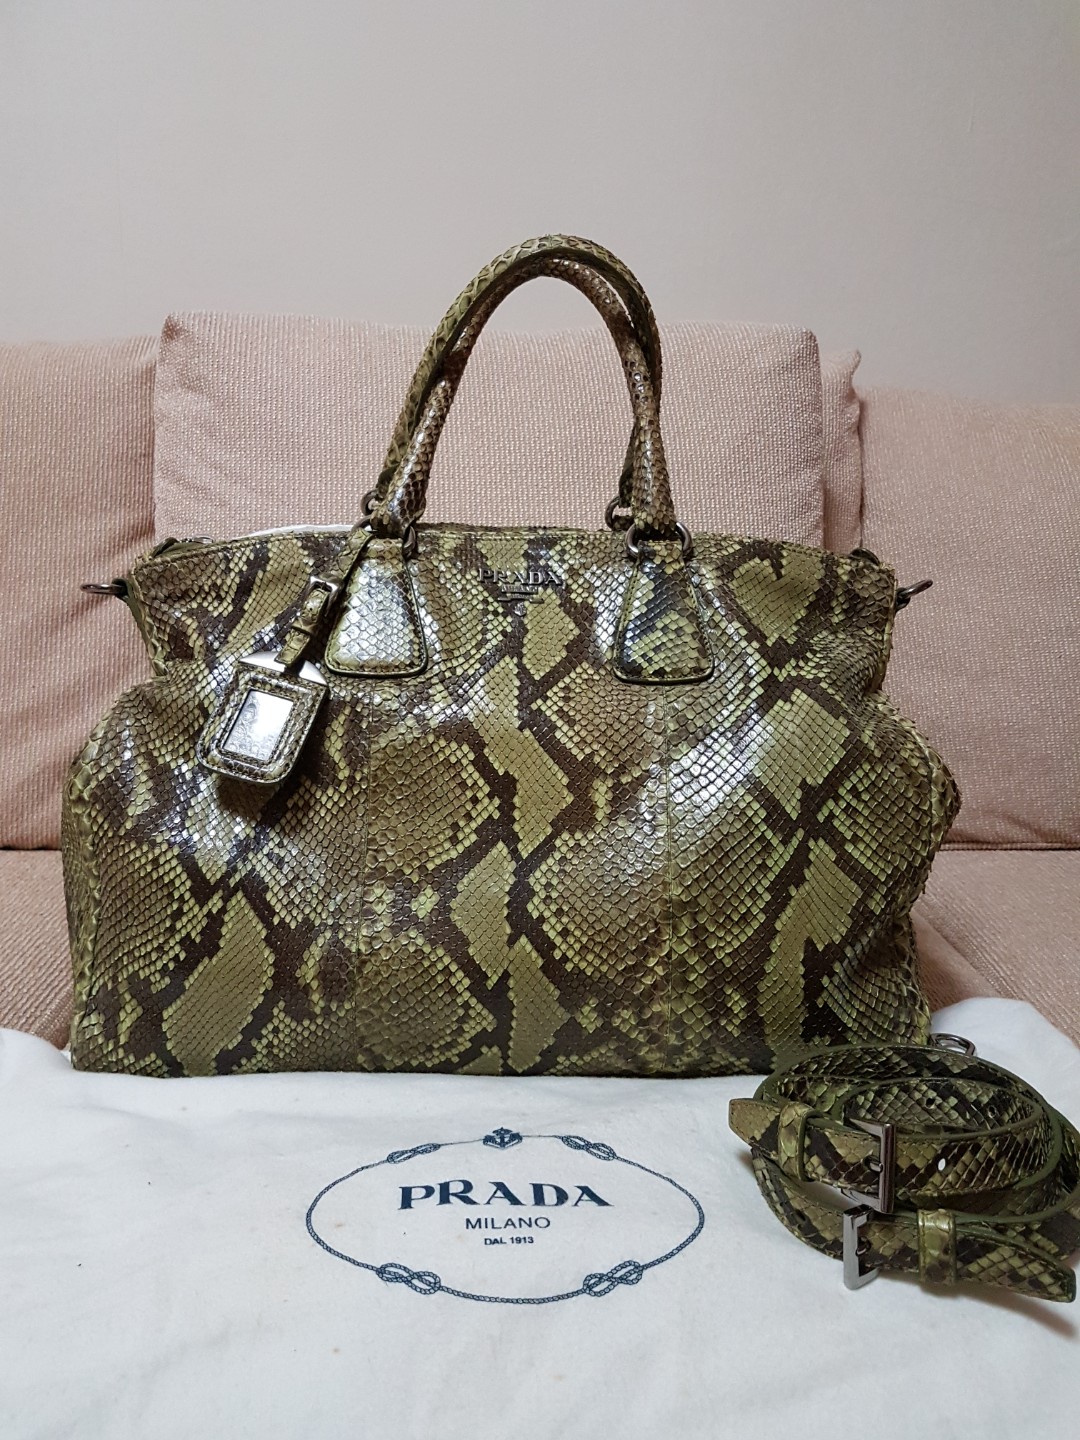 prada python bag